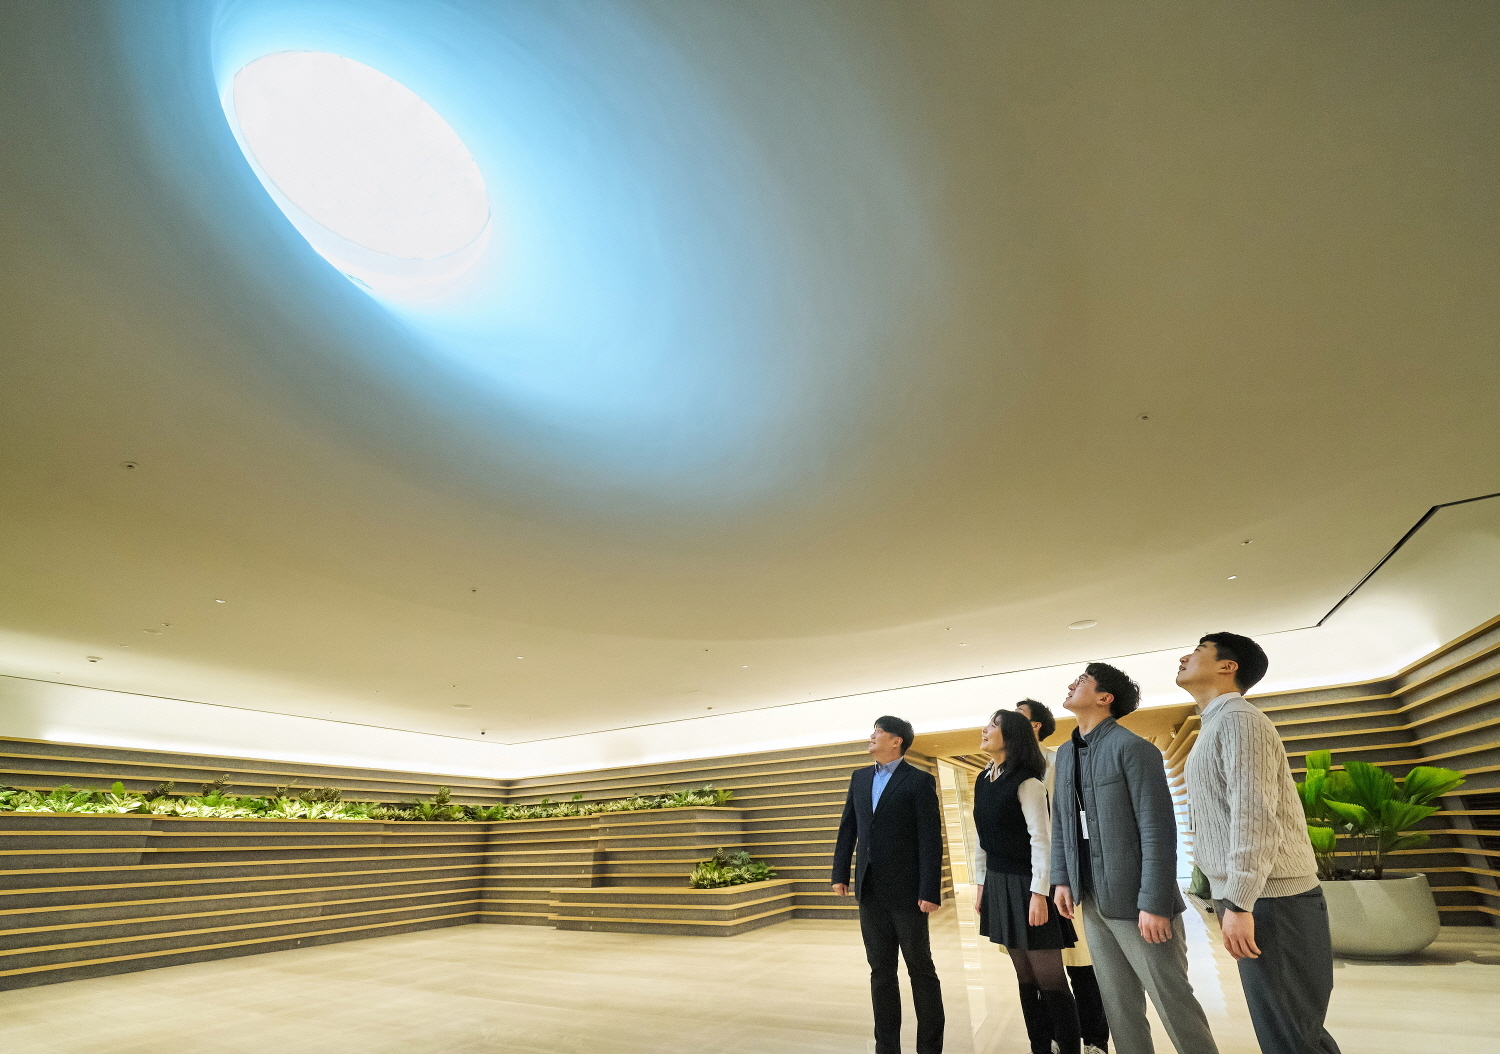 LG 직원들이 LG트윈타워 지하 1층에 새로 조성된 ‘틴들’에서 햇빛이 들어오는 천장을 바라보고 있다. ‘구름 사이로 빛이 쏟아지는 자연 현상’을 의미하는 ‘틴들’은 자연채광이 천장의 창을 통해 실내를 비춘다. ㈜LG 제공